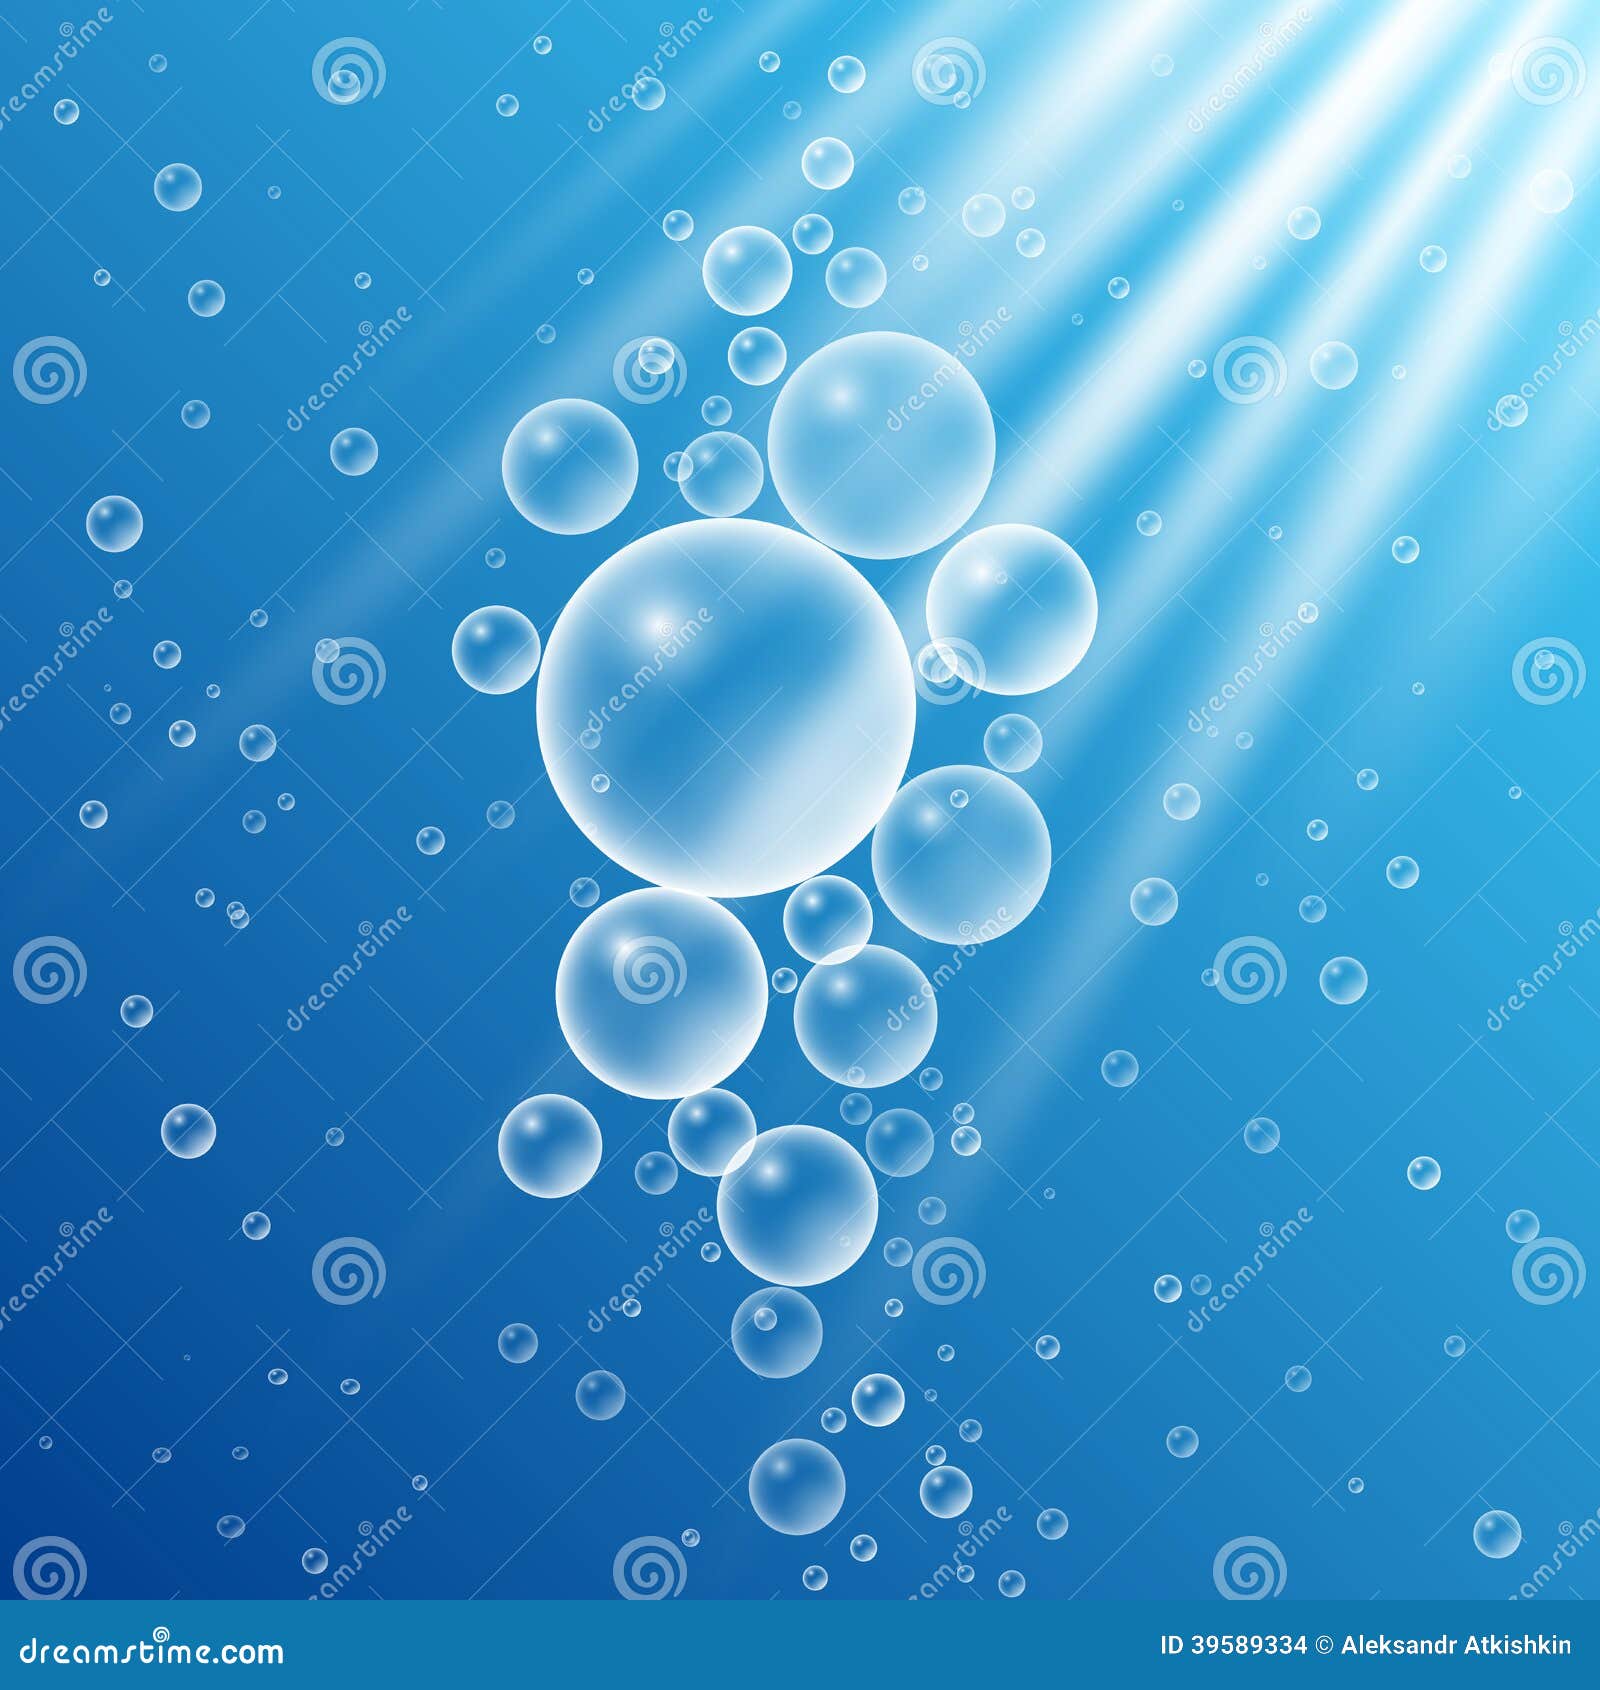 ocean bubbles clipart - photo #19